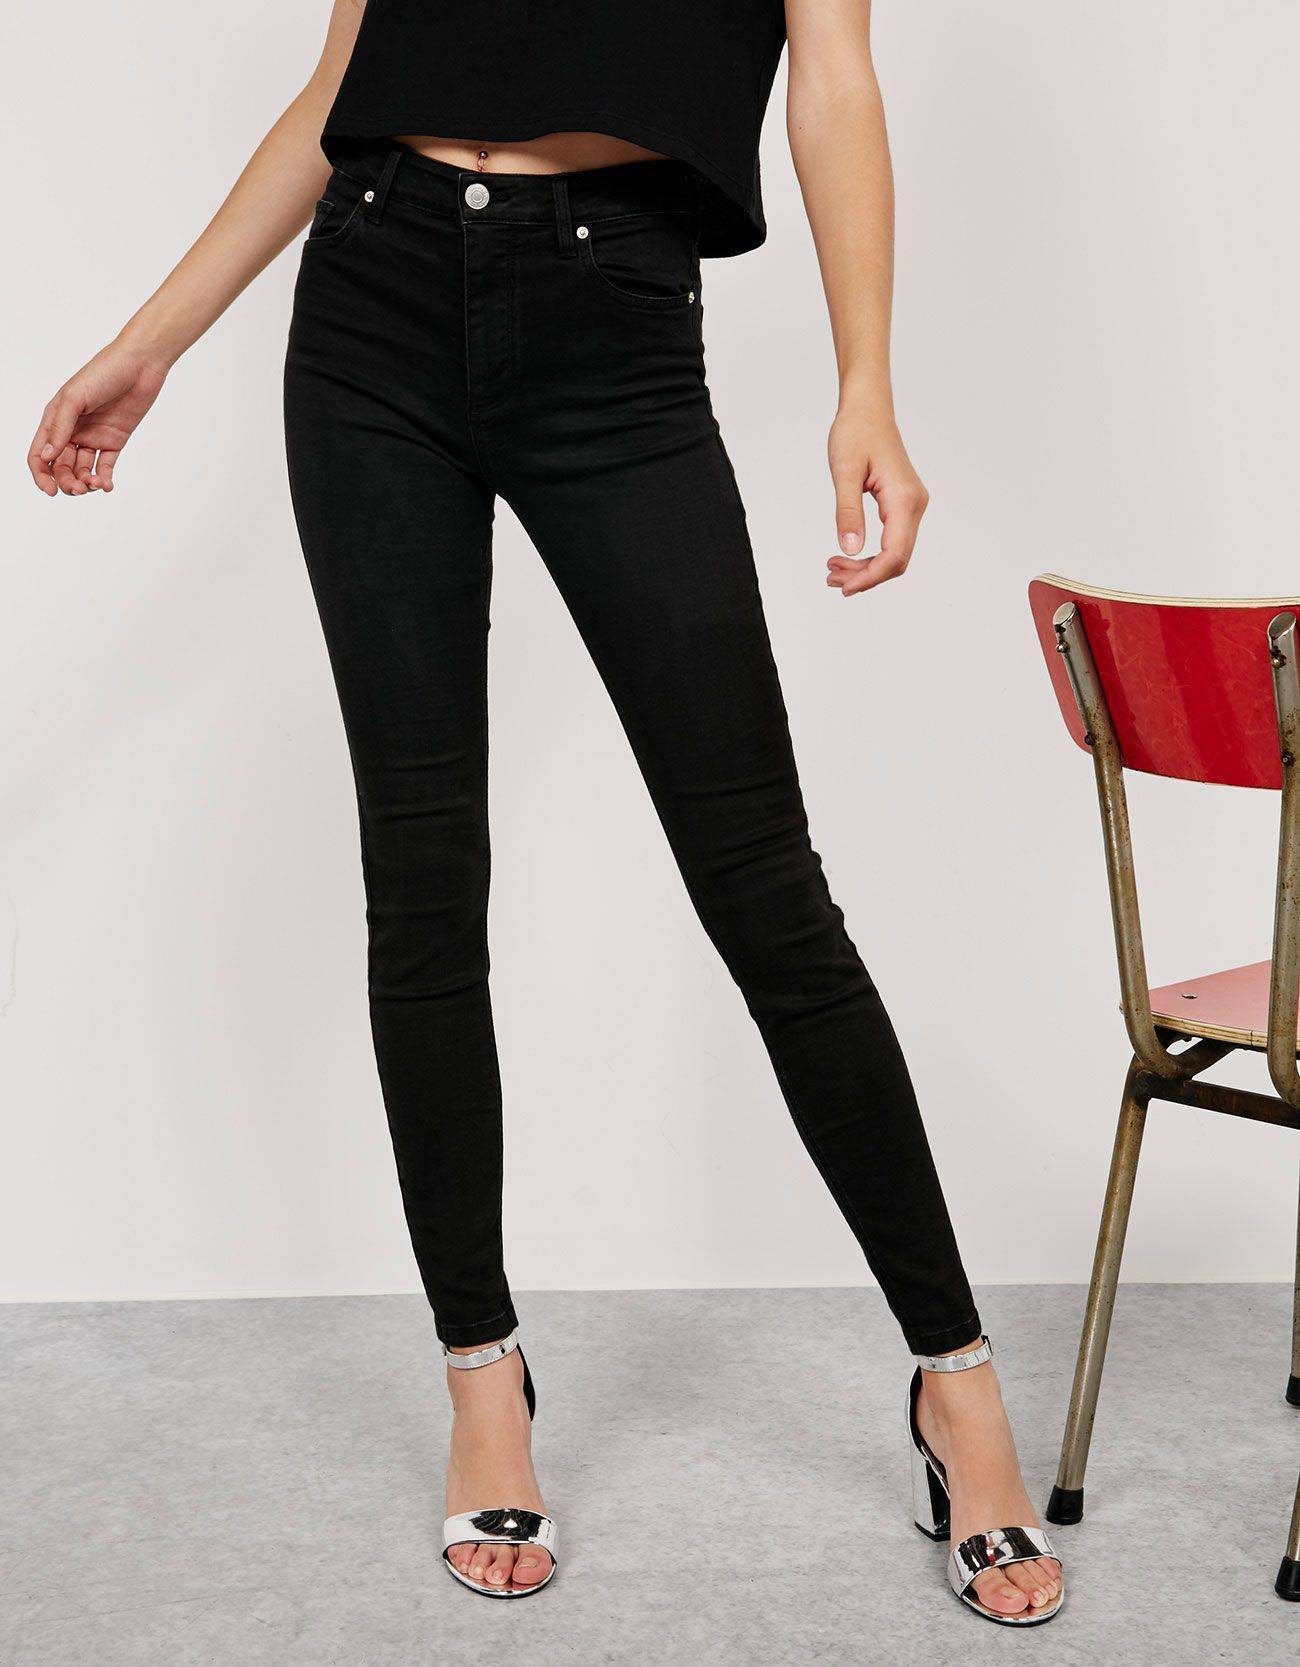 Что одеть с черными джинсами: 9 стильных образов | lifepodium